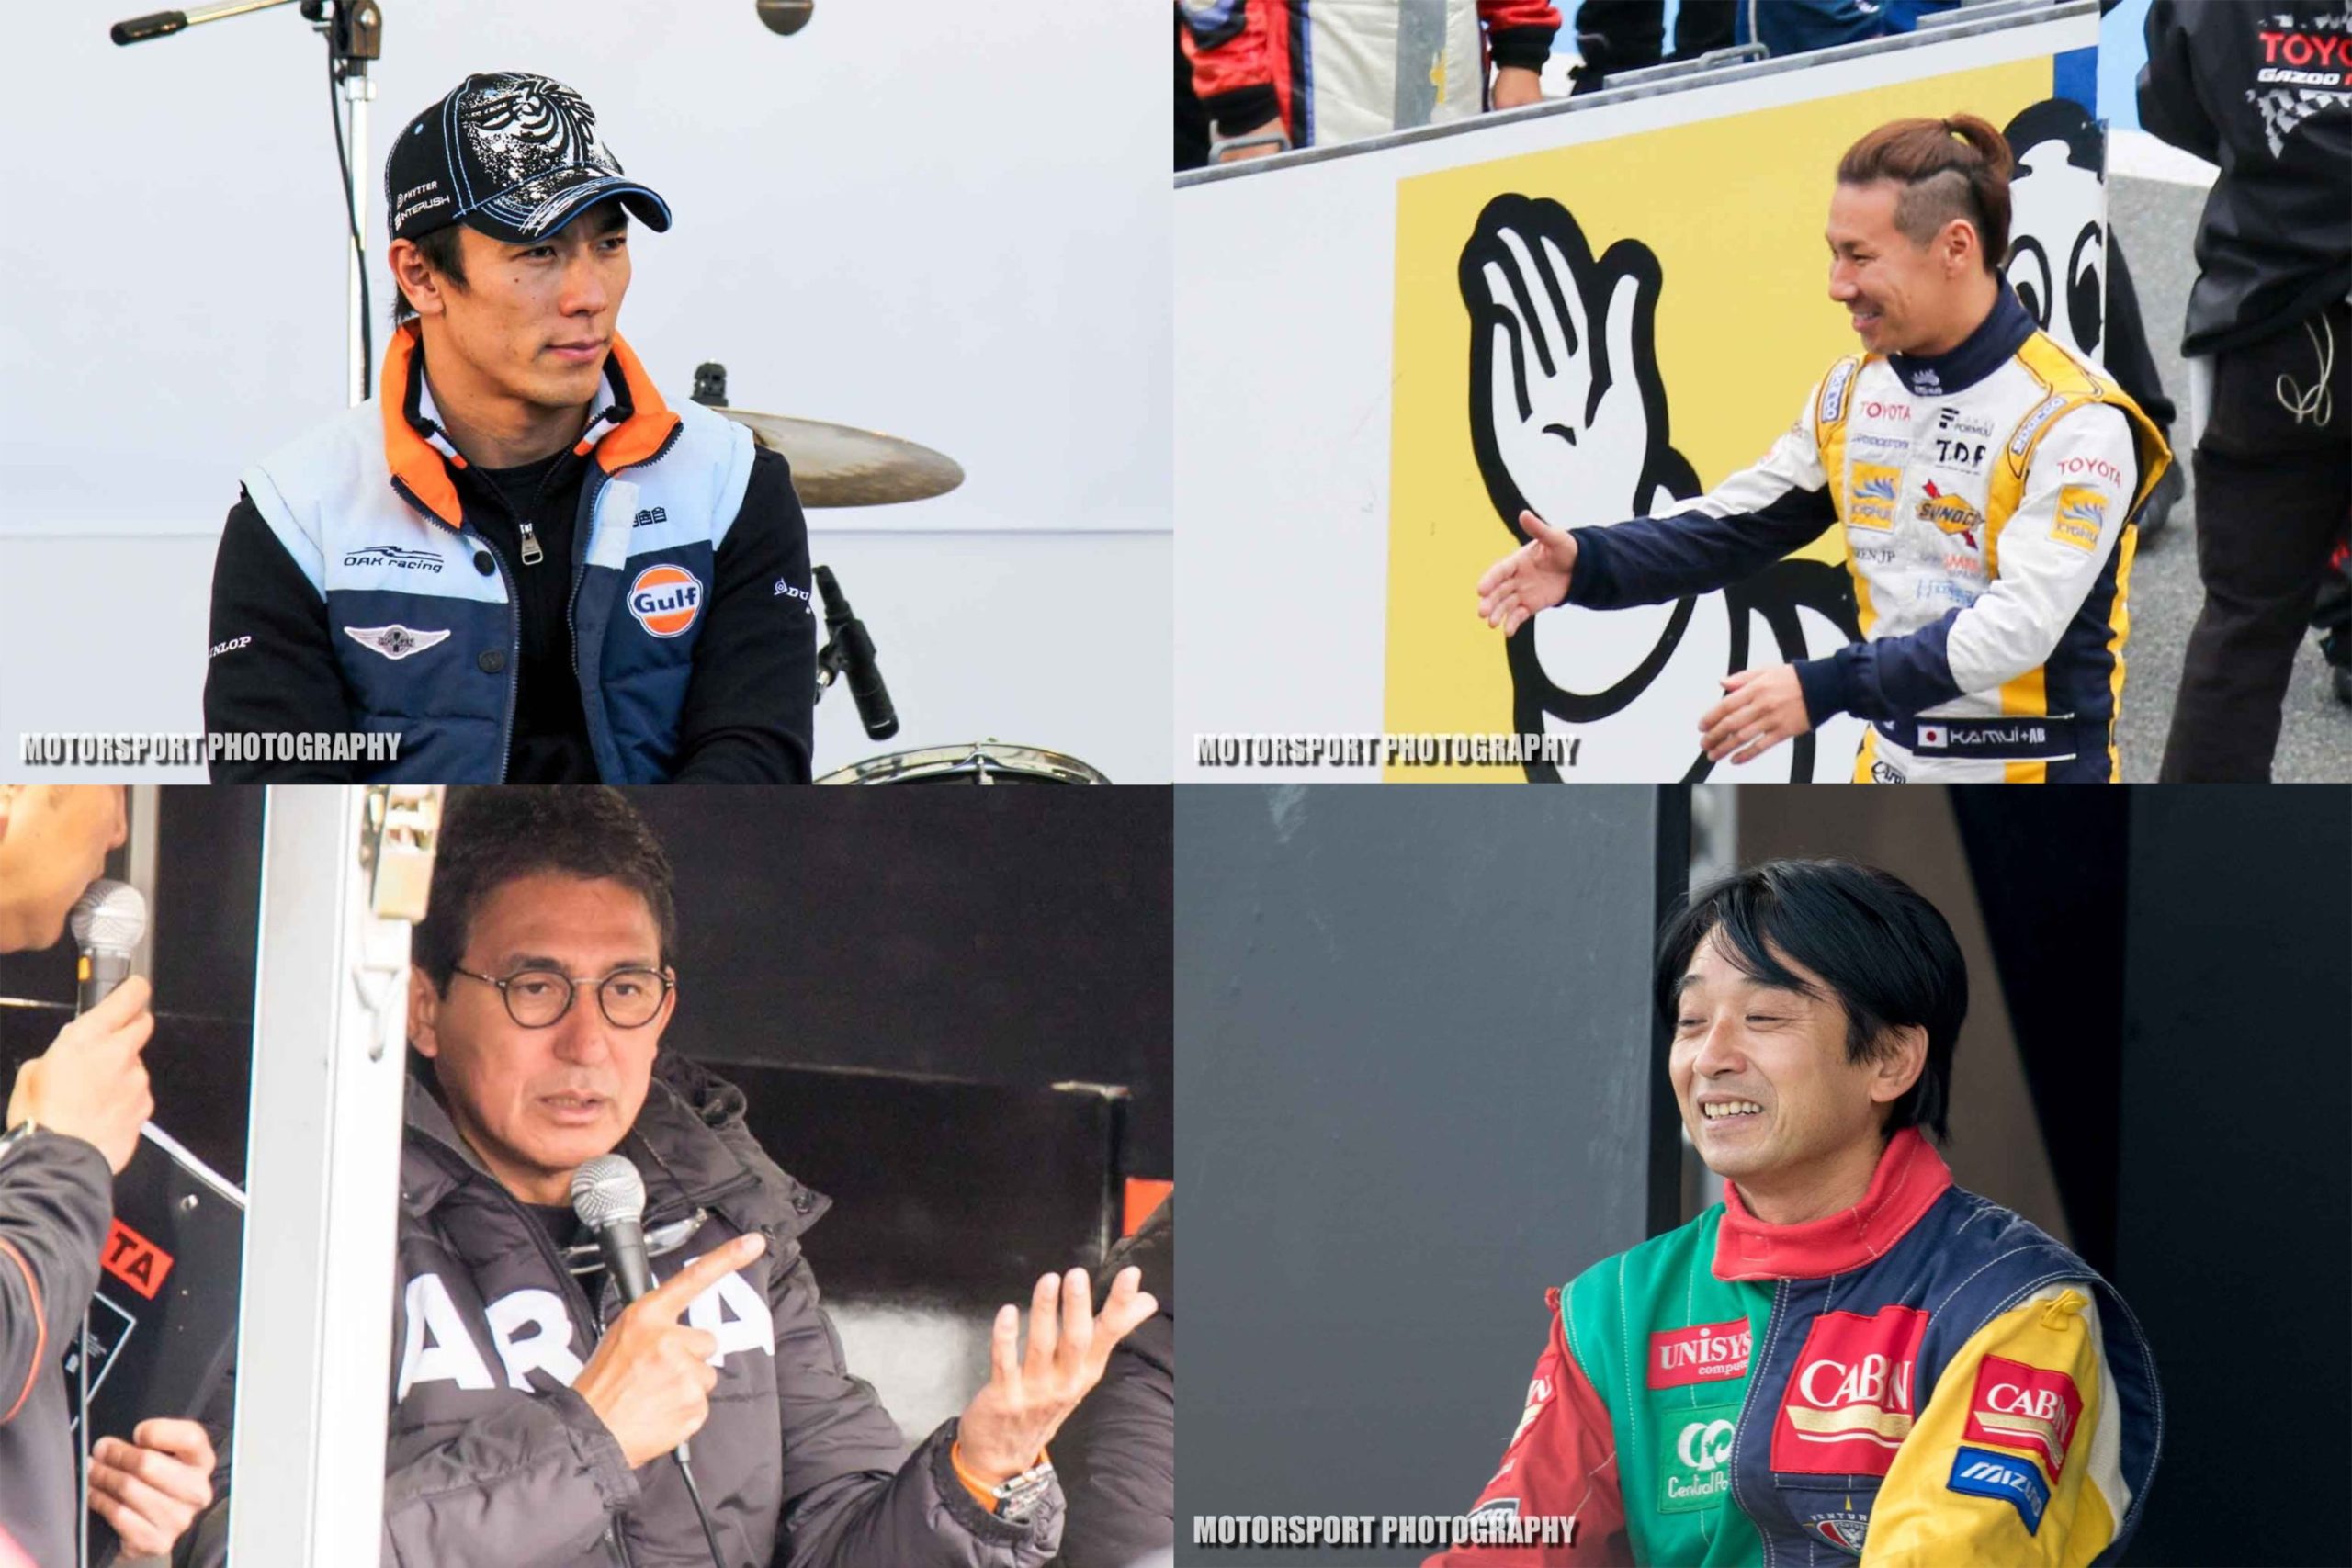 日本人f1ドライバー各種ランキング 出走回数 決勝最高位 予選最高位 通算ポイント数 モータースポーツフォトグラフィー